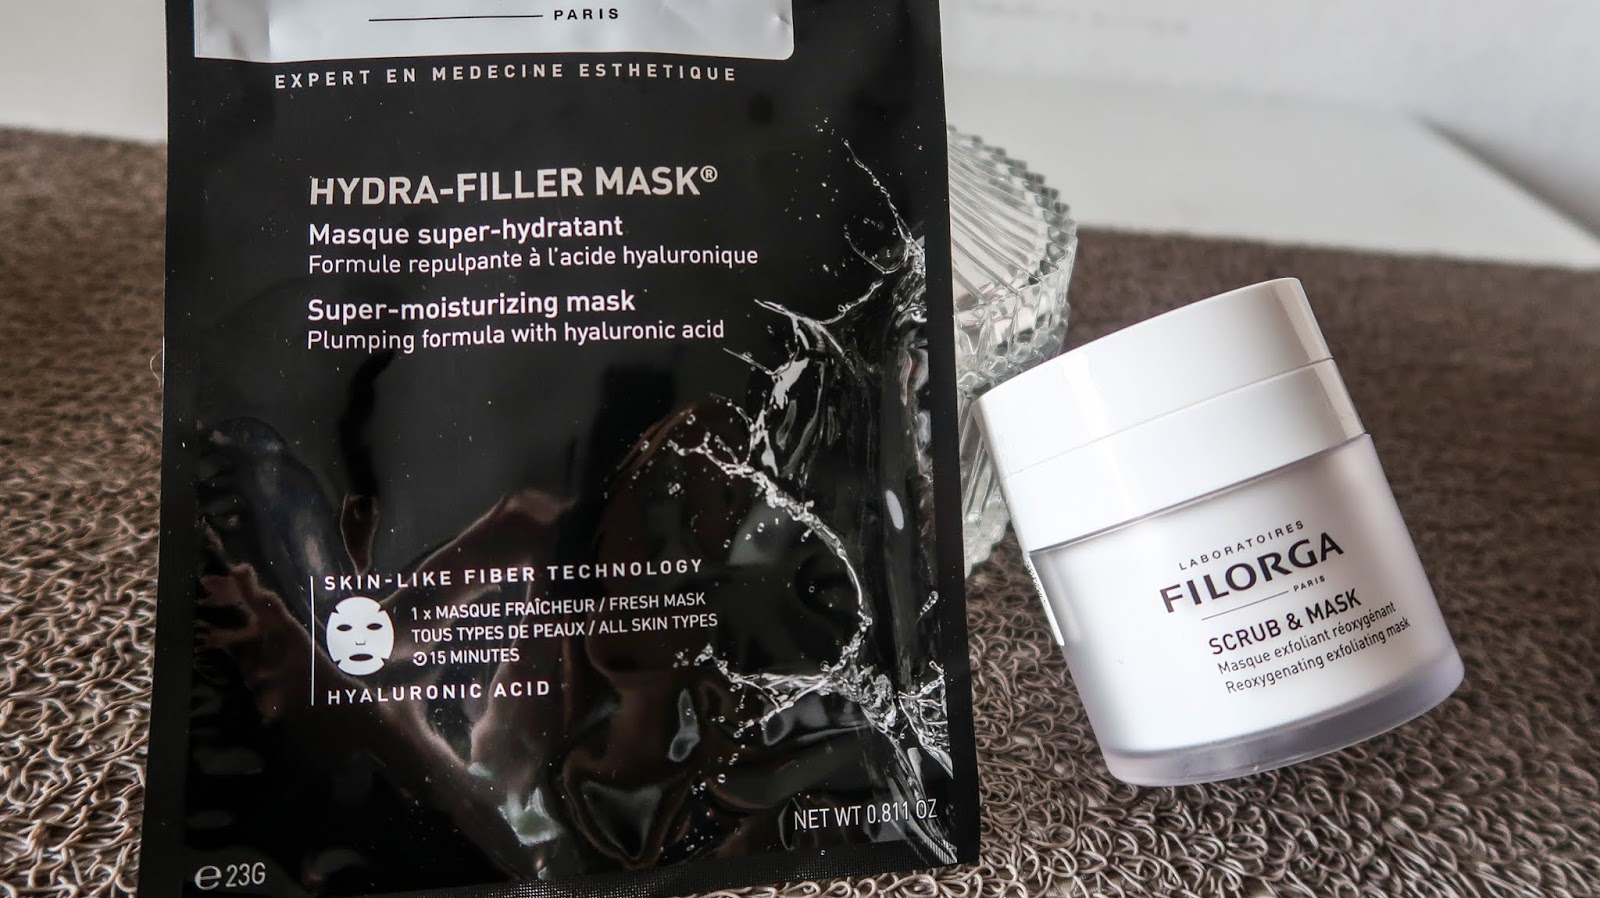 Comprar Filorga Hydra-Filler Mask en Gran Farmacia Online Andorra Una ligera máscara cosmética que le da a tu piel todas las vitaminas y minerales provenientes del aloe vera, reforzado con los efectos del ácido hialurónico